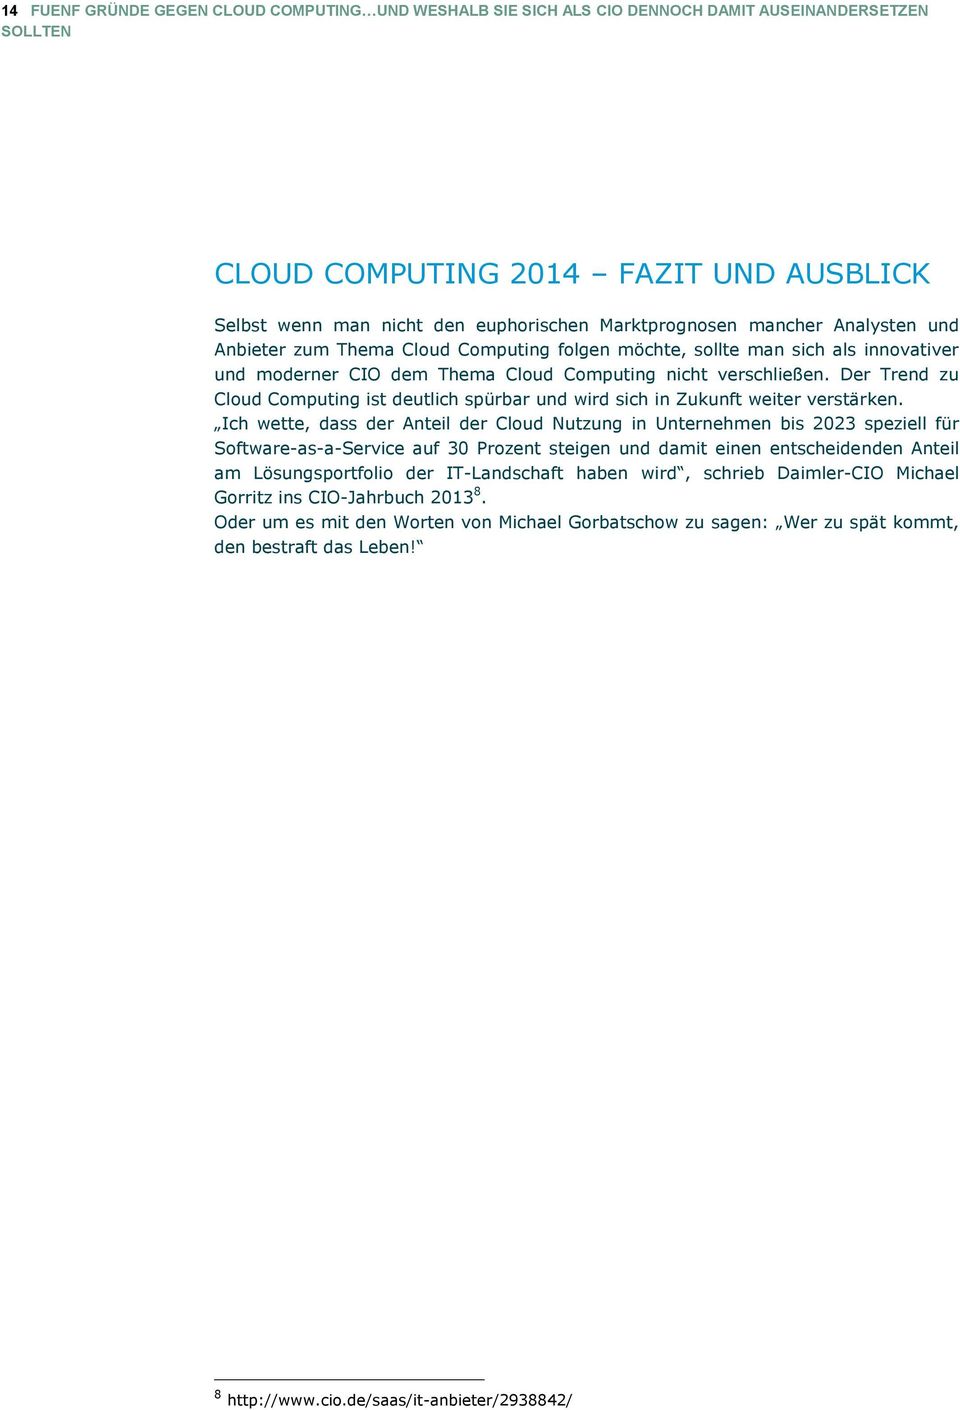 Der Trend zu Cloud Computing ist deutlich spürbar und wird sich in Zukunft weiter verstärken.